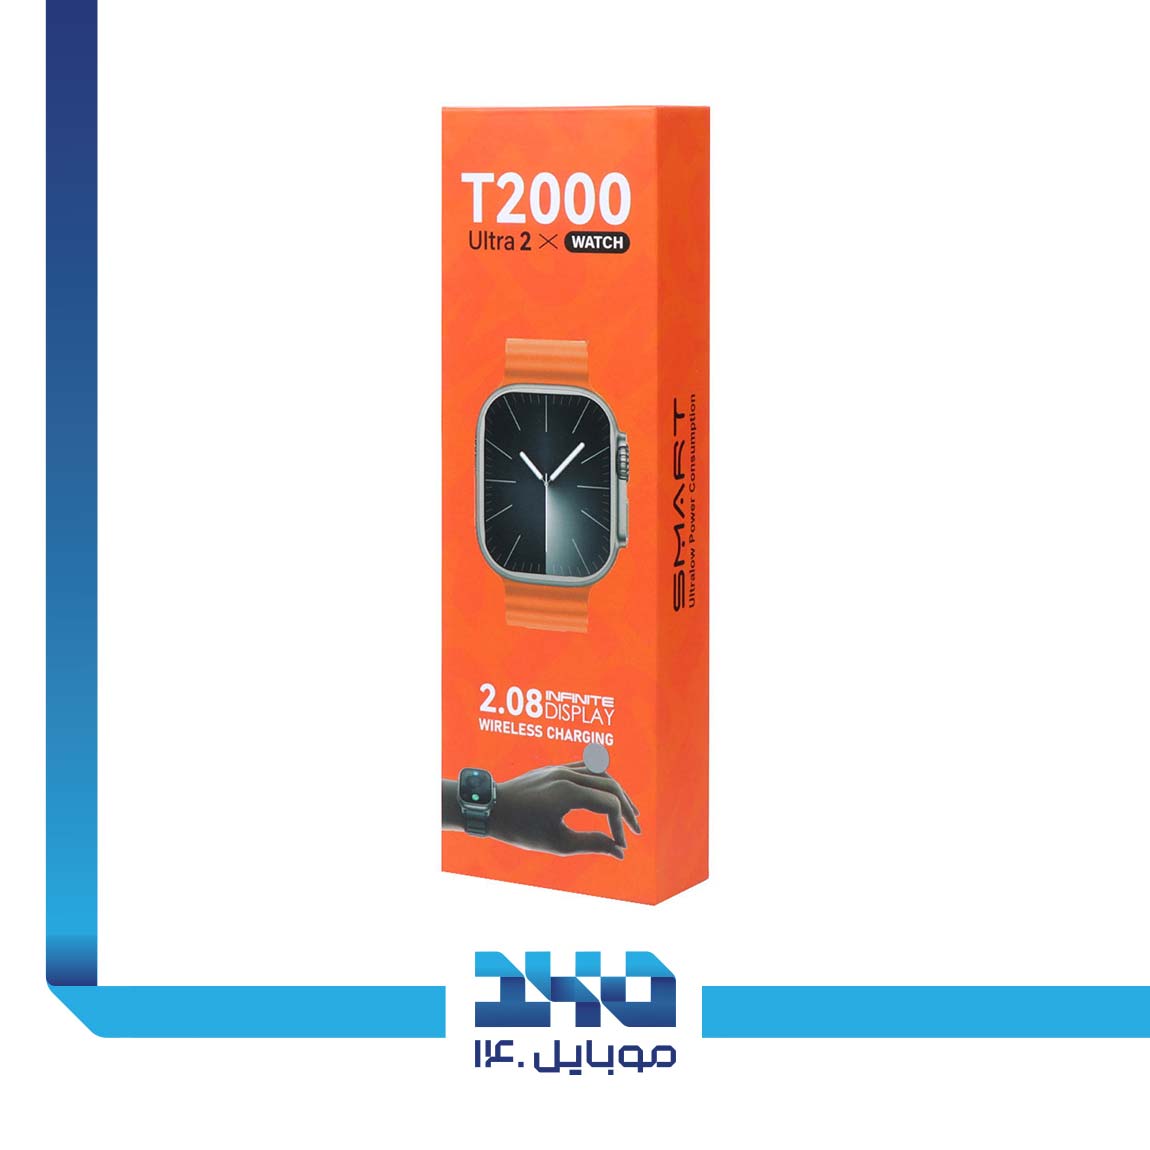 T2000 Ultra 2 Smart Watch 3